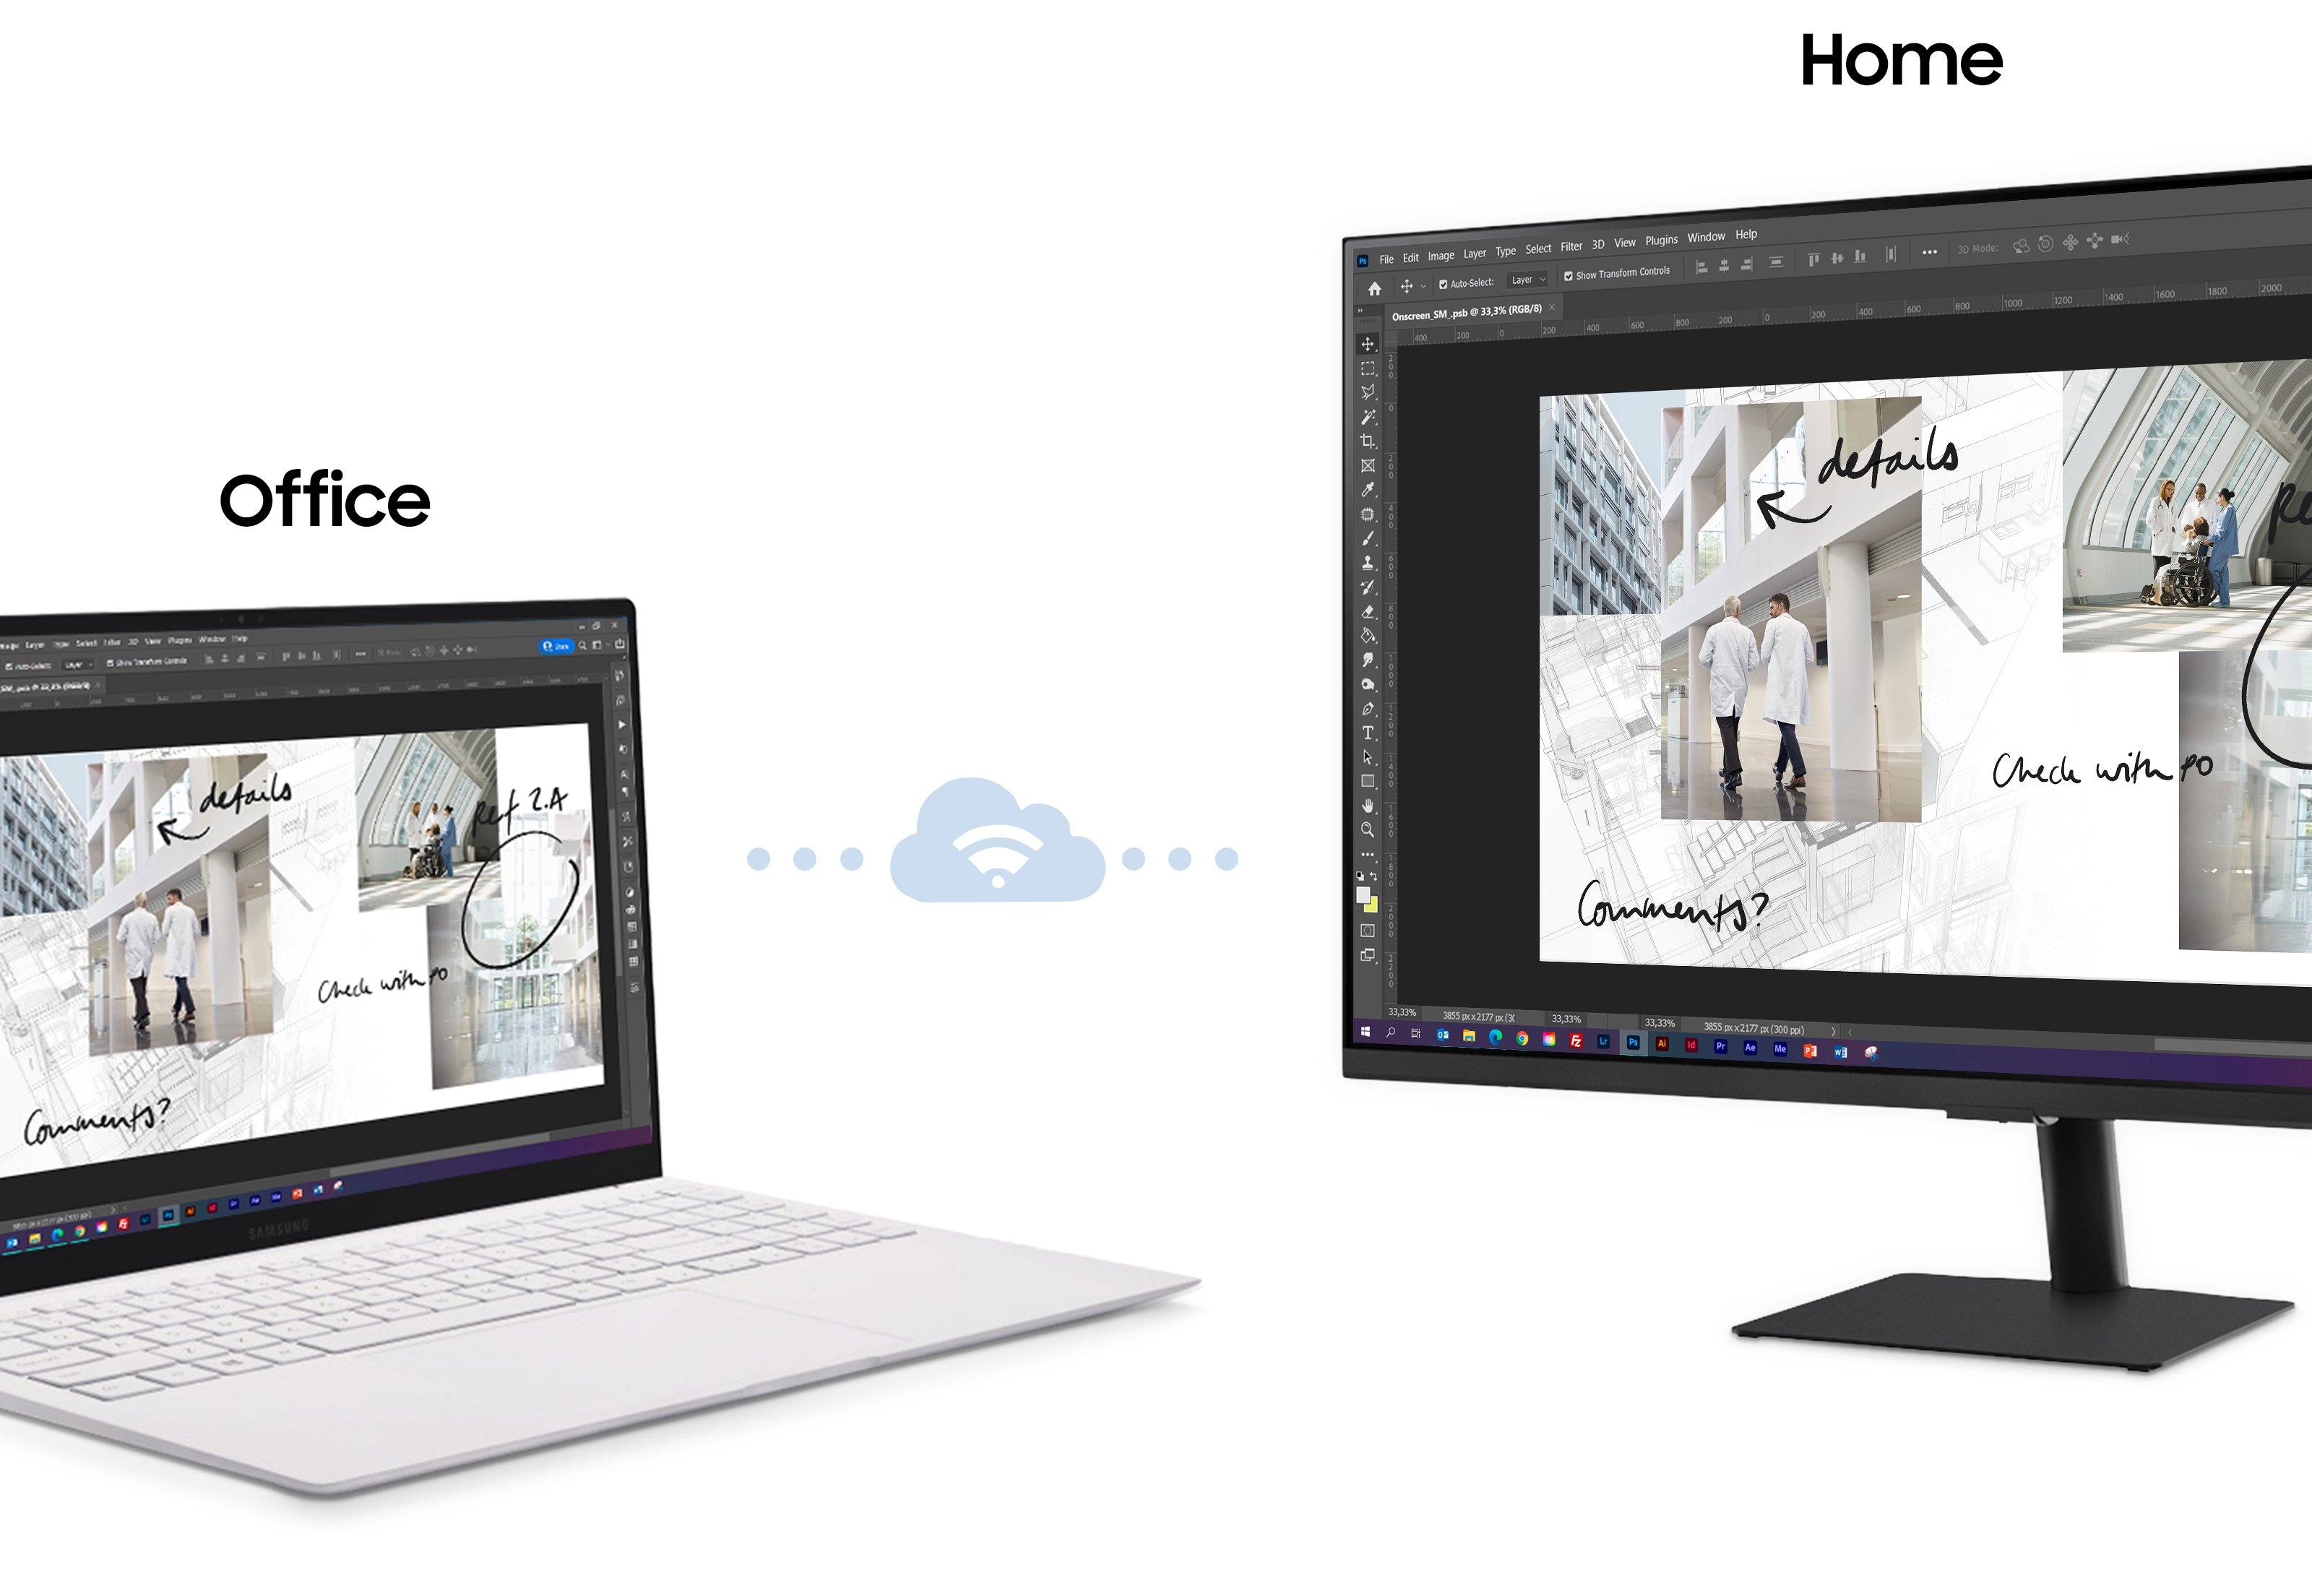 M5 - laptop og desktop i workmode